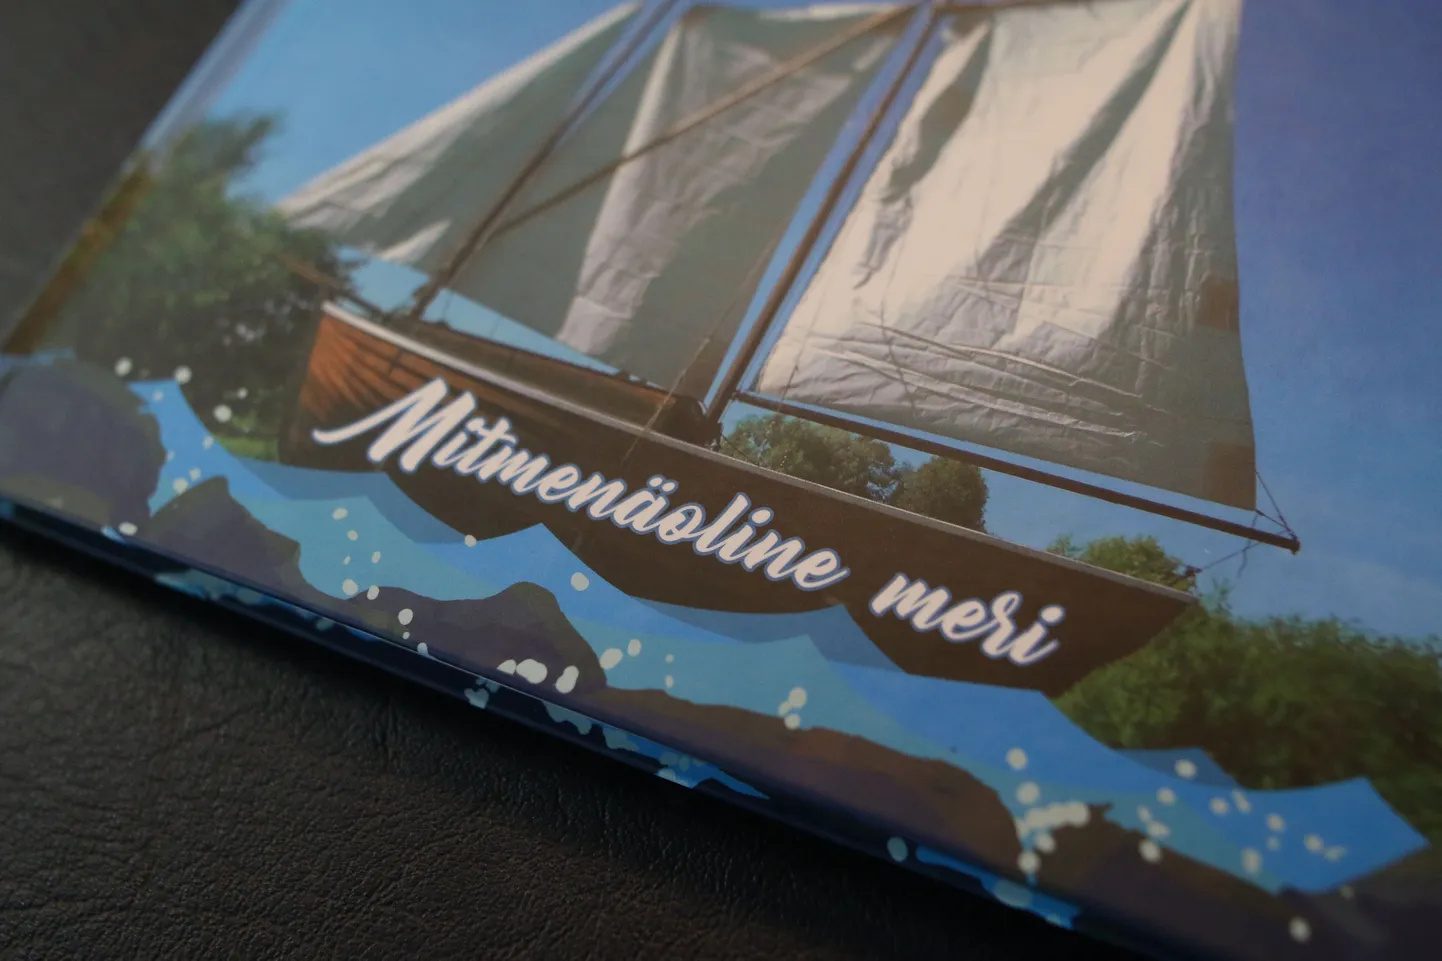 Kabli külaseltsi juhatuse liige Malle Alunurm kinkis loomekonkursil "Meri" osalenutele vastvalminud raamatu "Mitmenäoline meri", milles on õpilasautorite tööd.